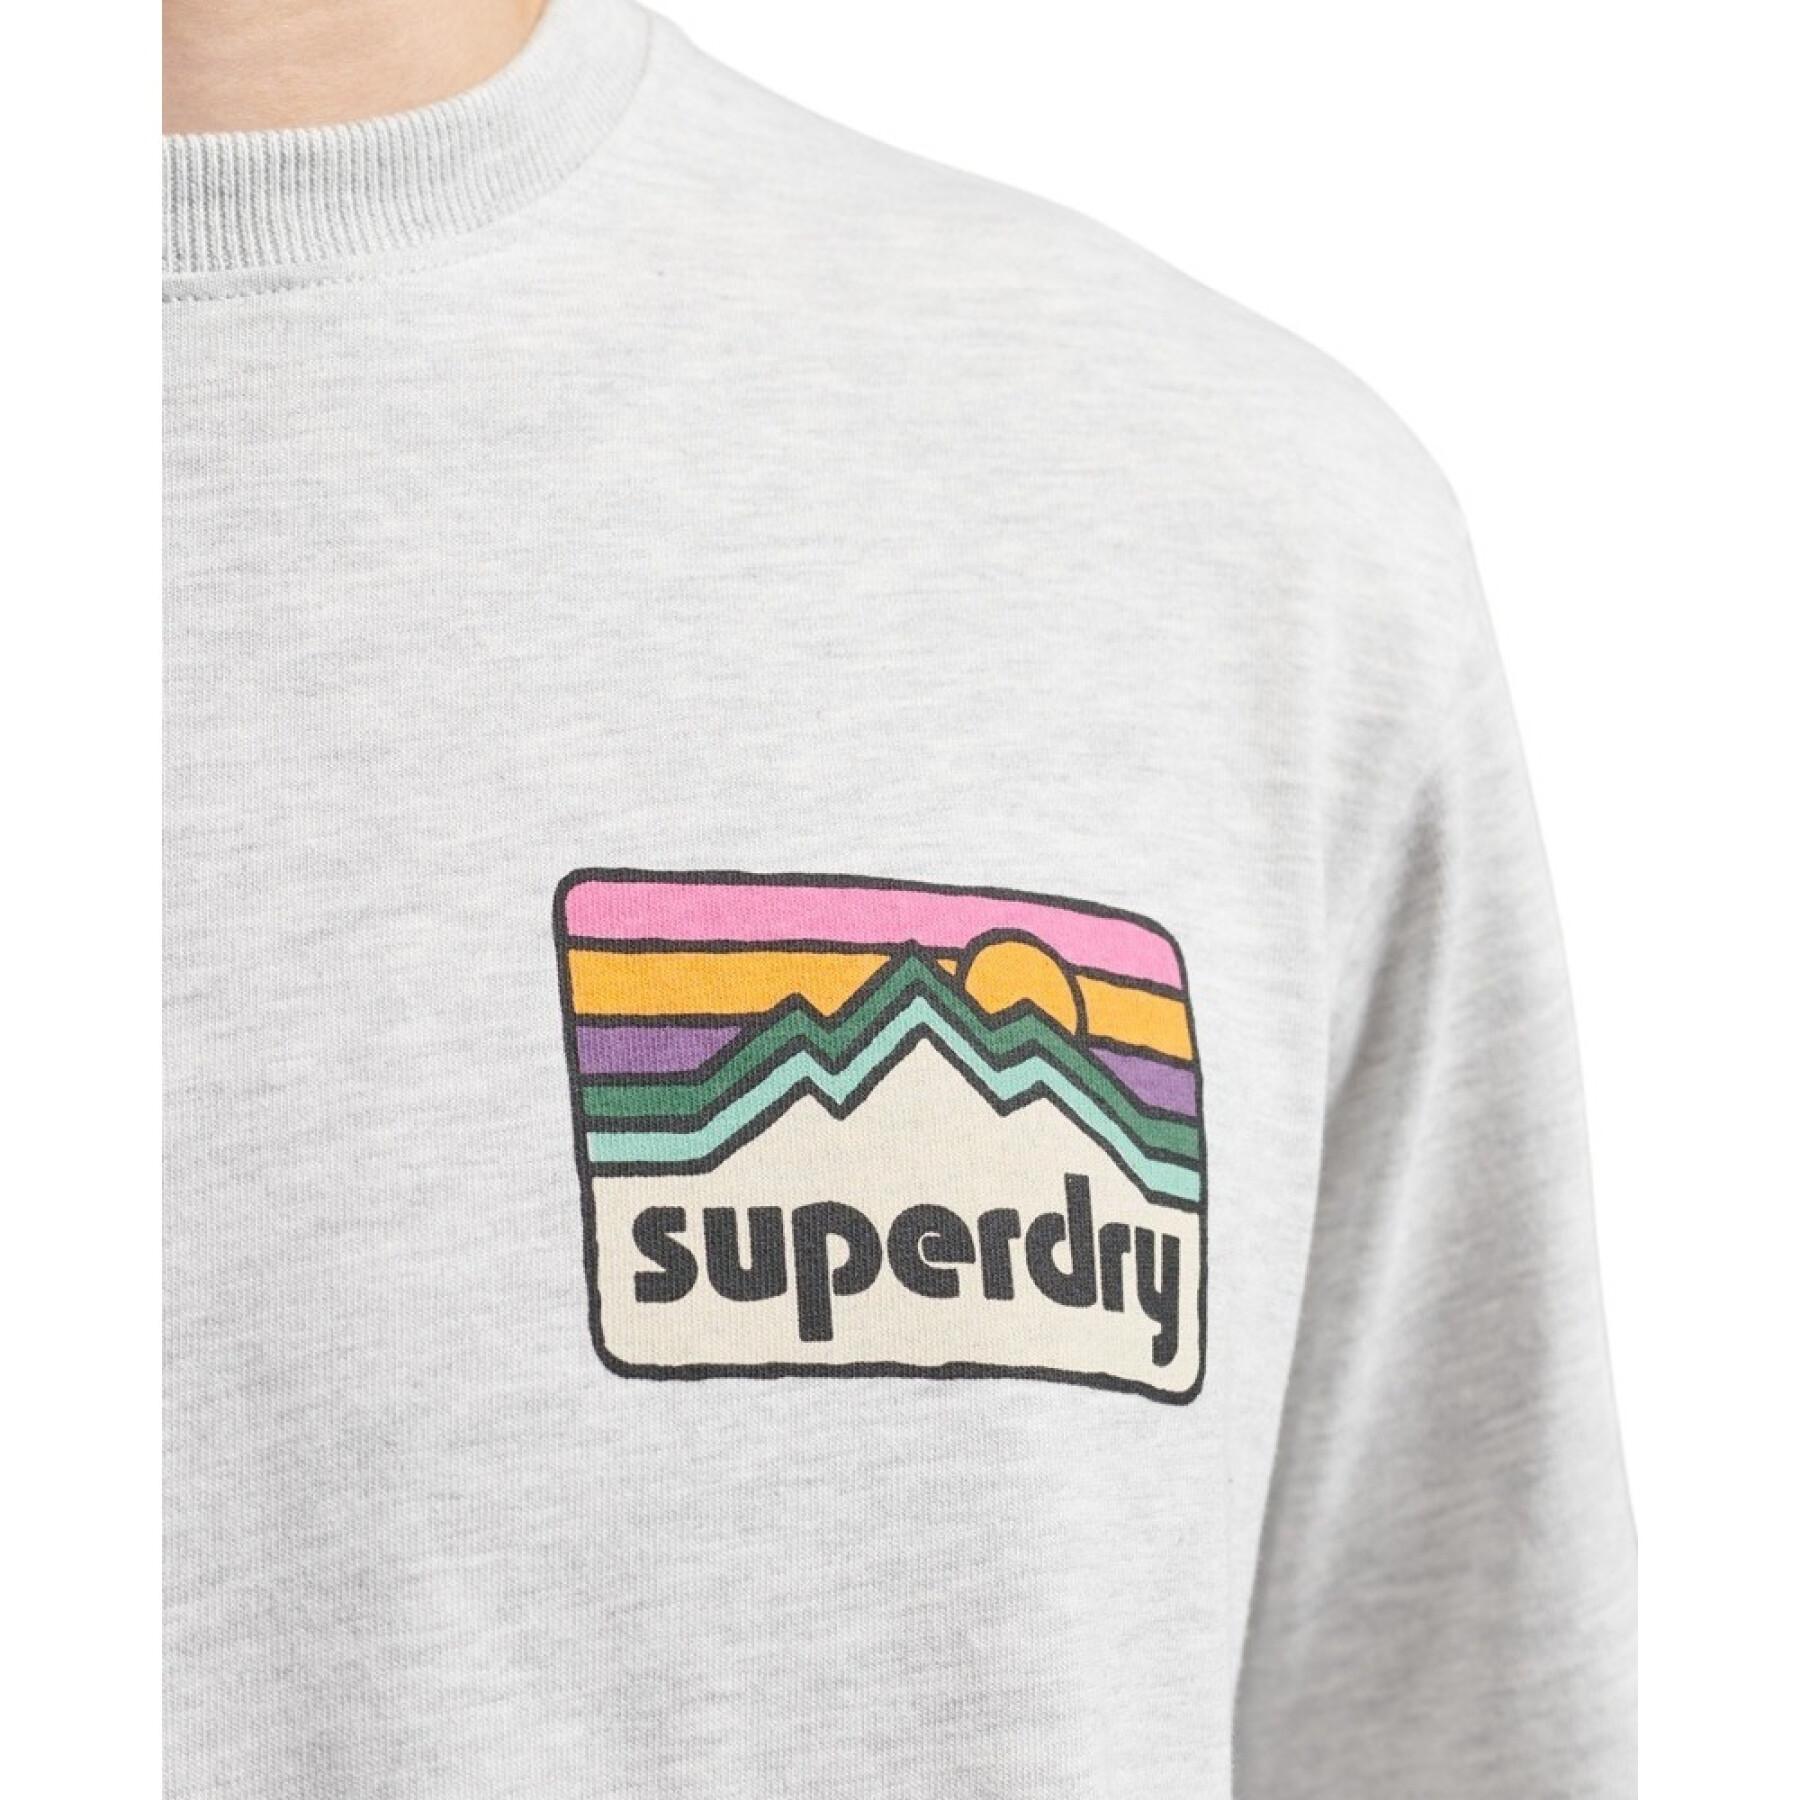 T-shirt Superdry Vintage 90's Terrain